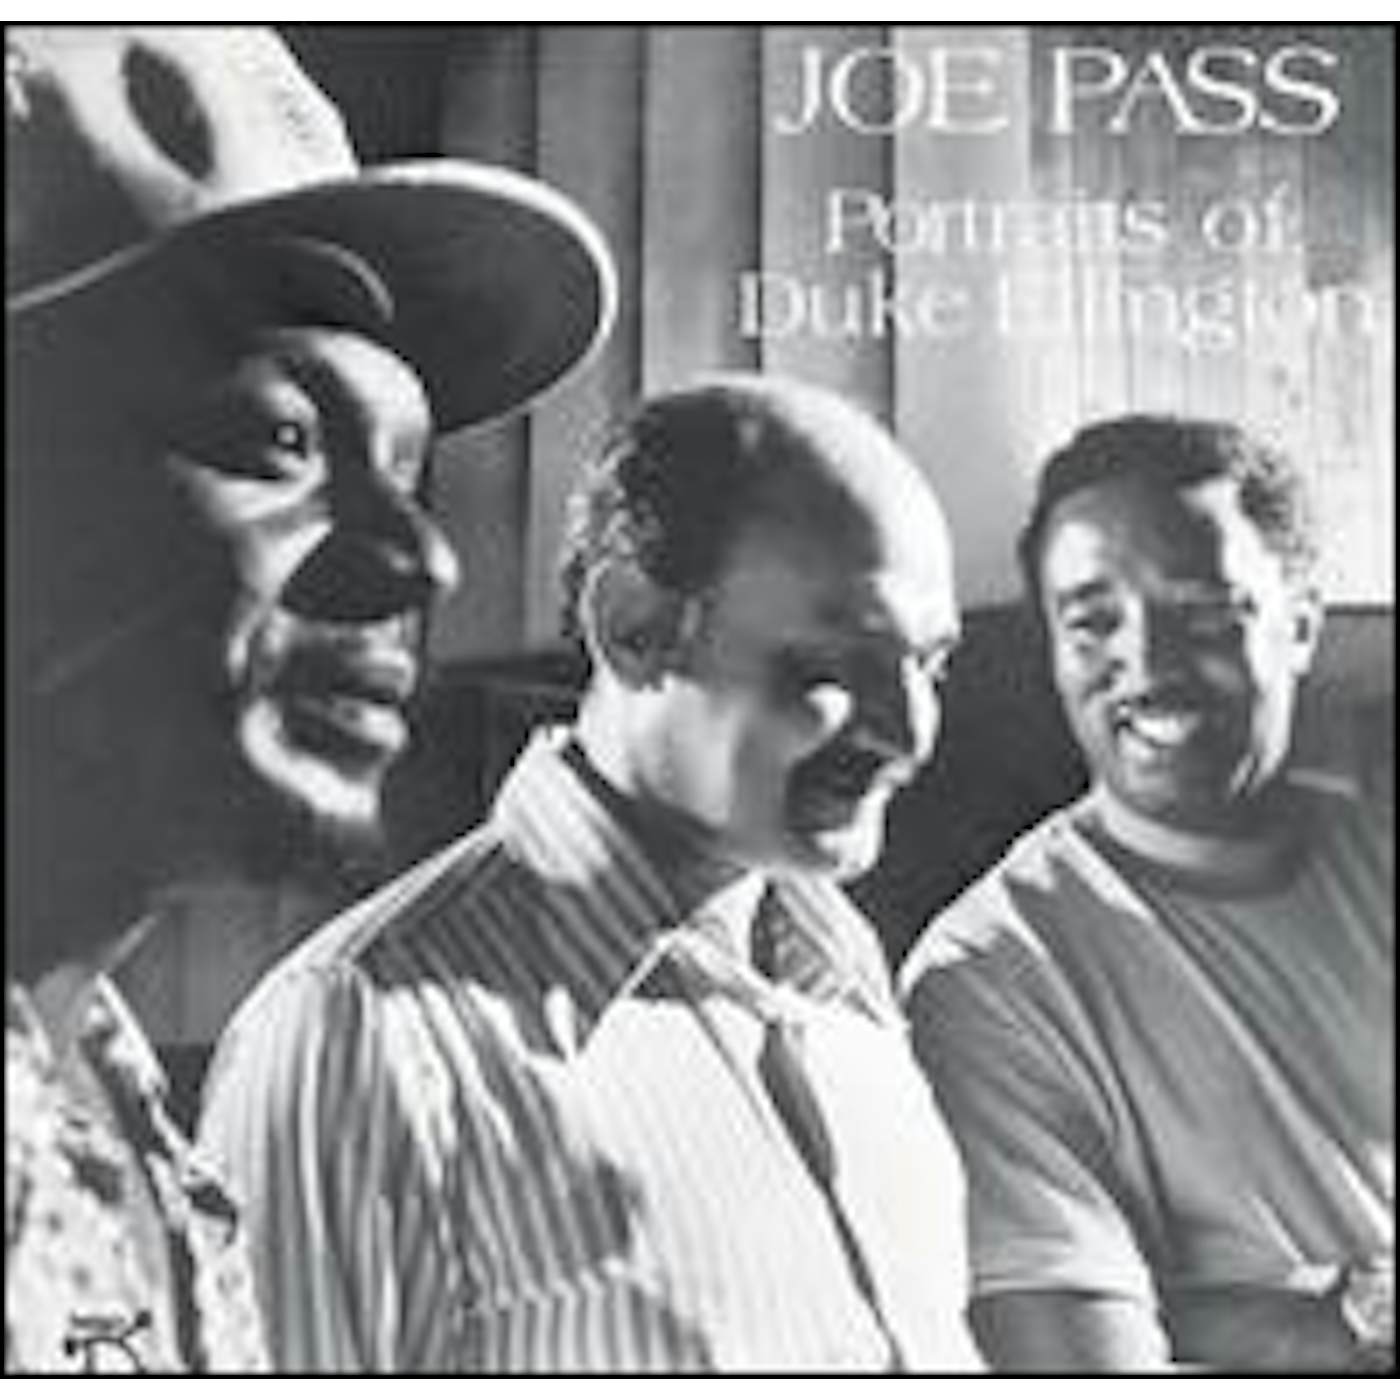 Joe Pass PORTRAITS OF DUKE ELLINGTON CD